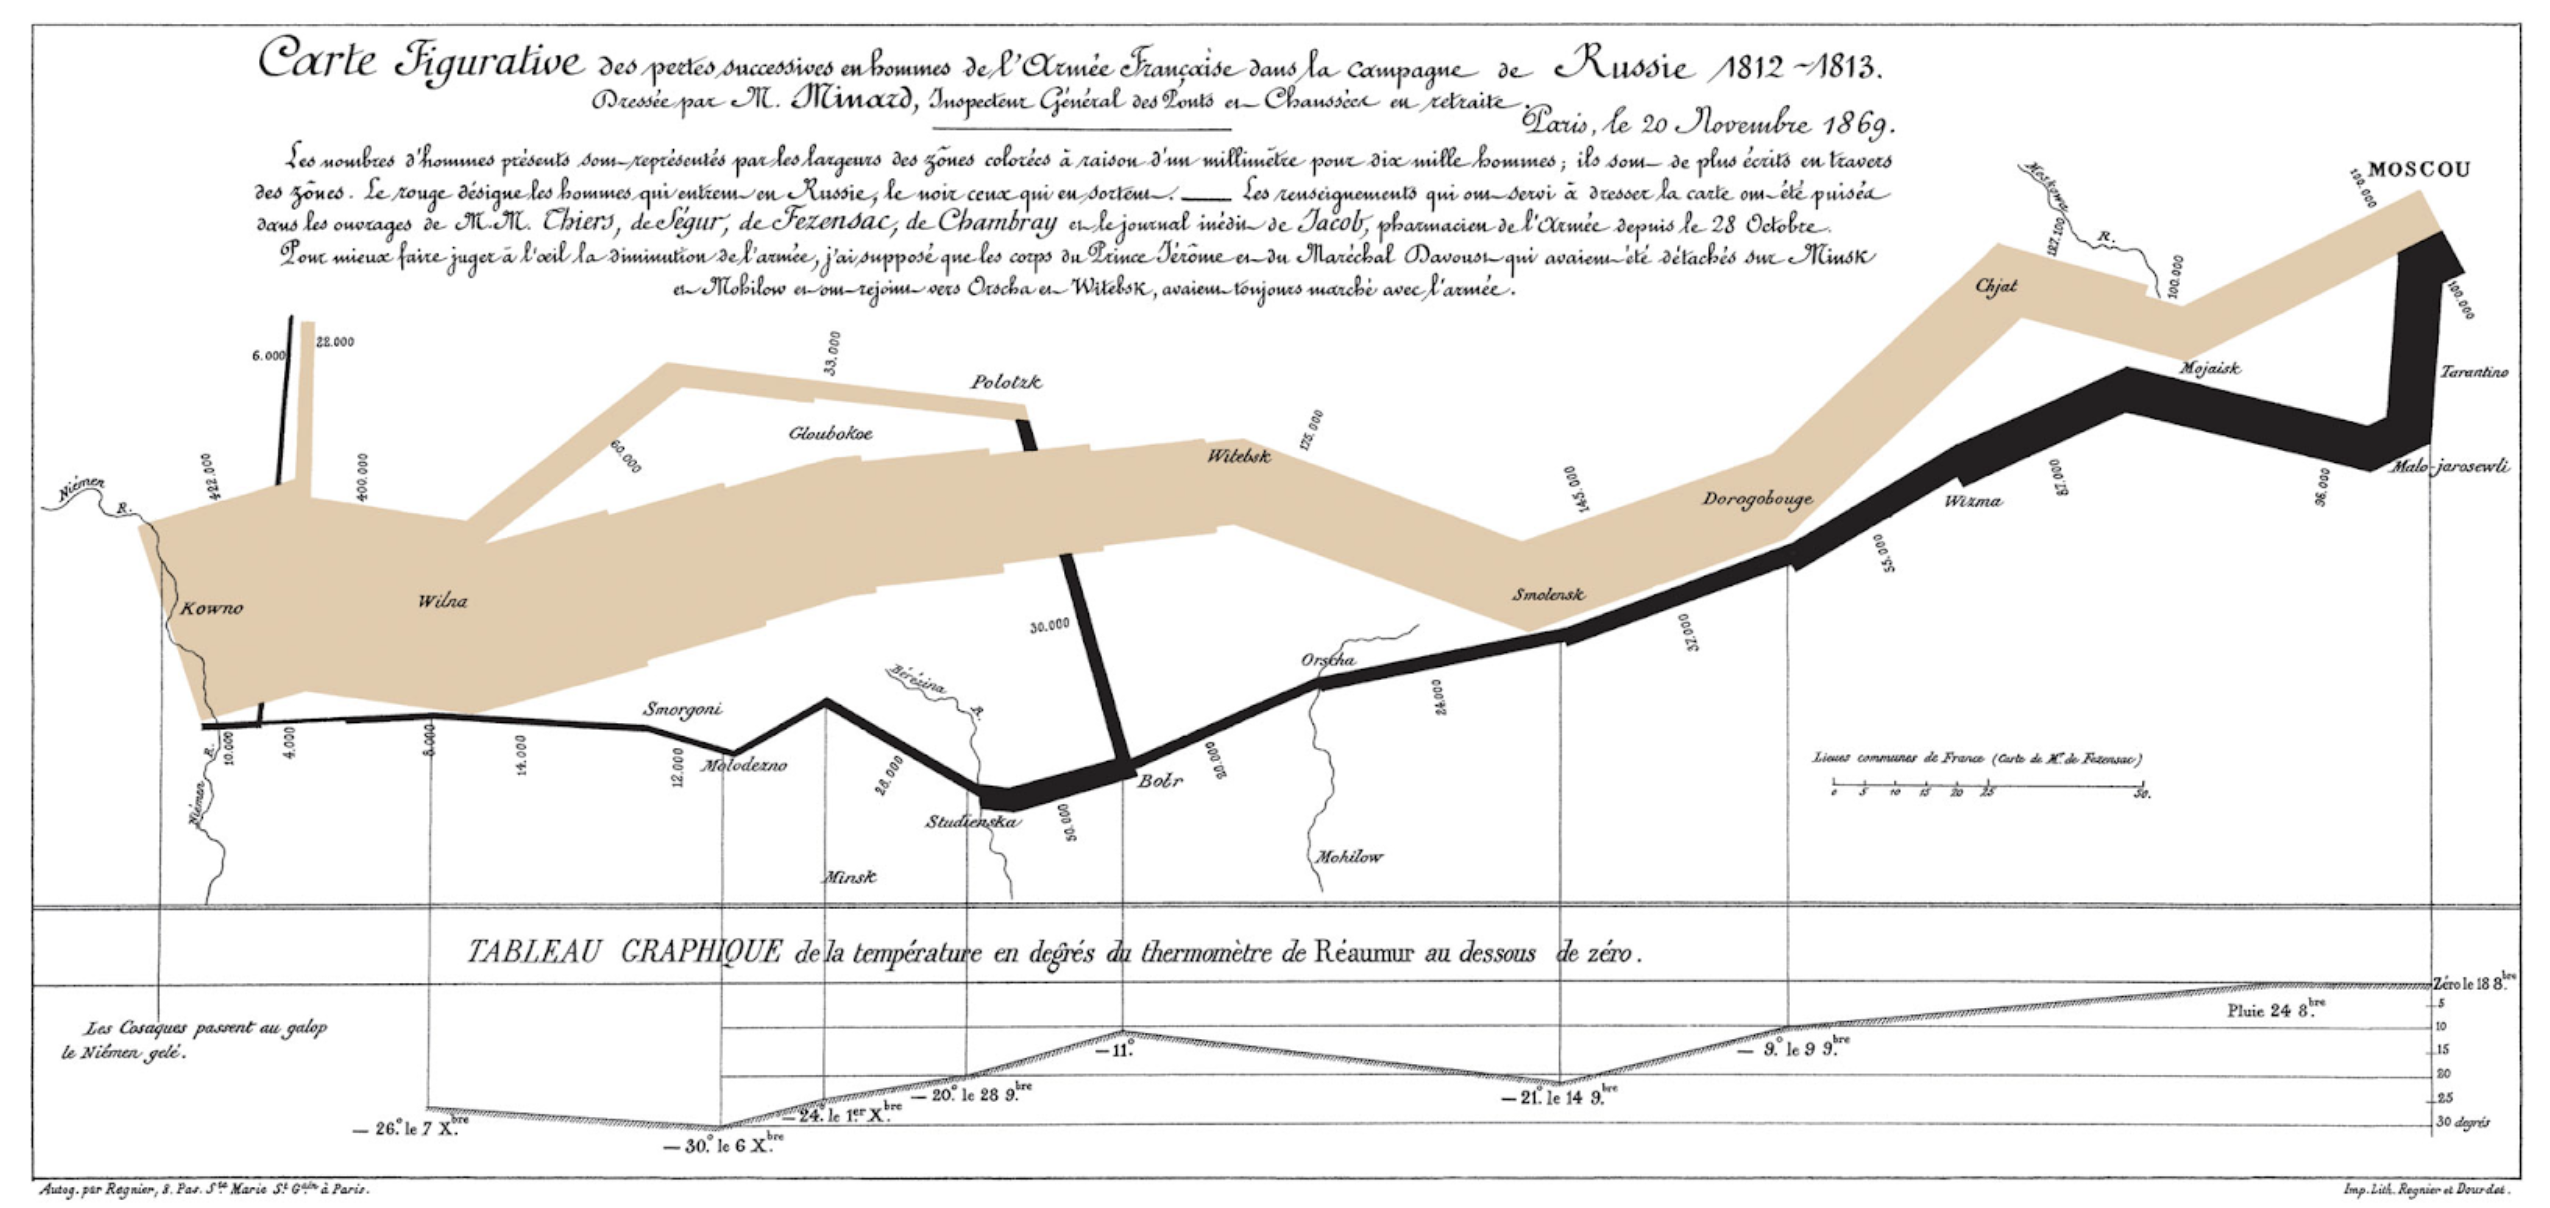  Figura 2. L’armée française dans la campagne de Russie 1812-1813